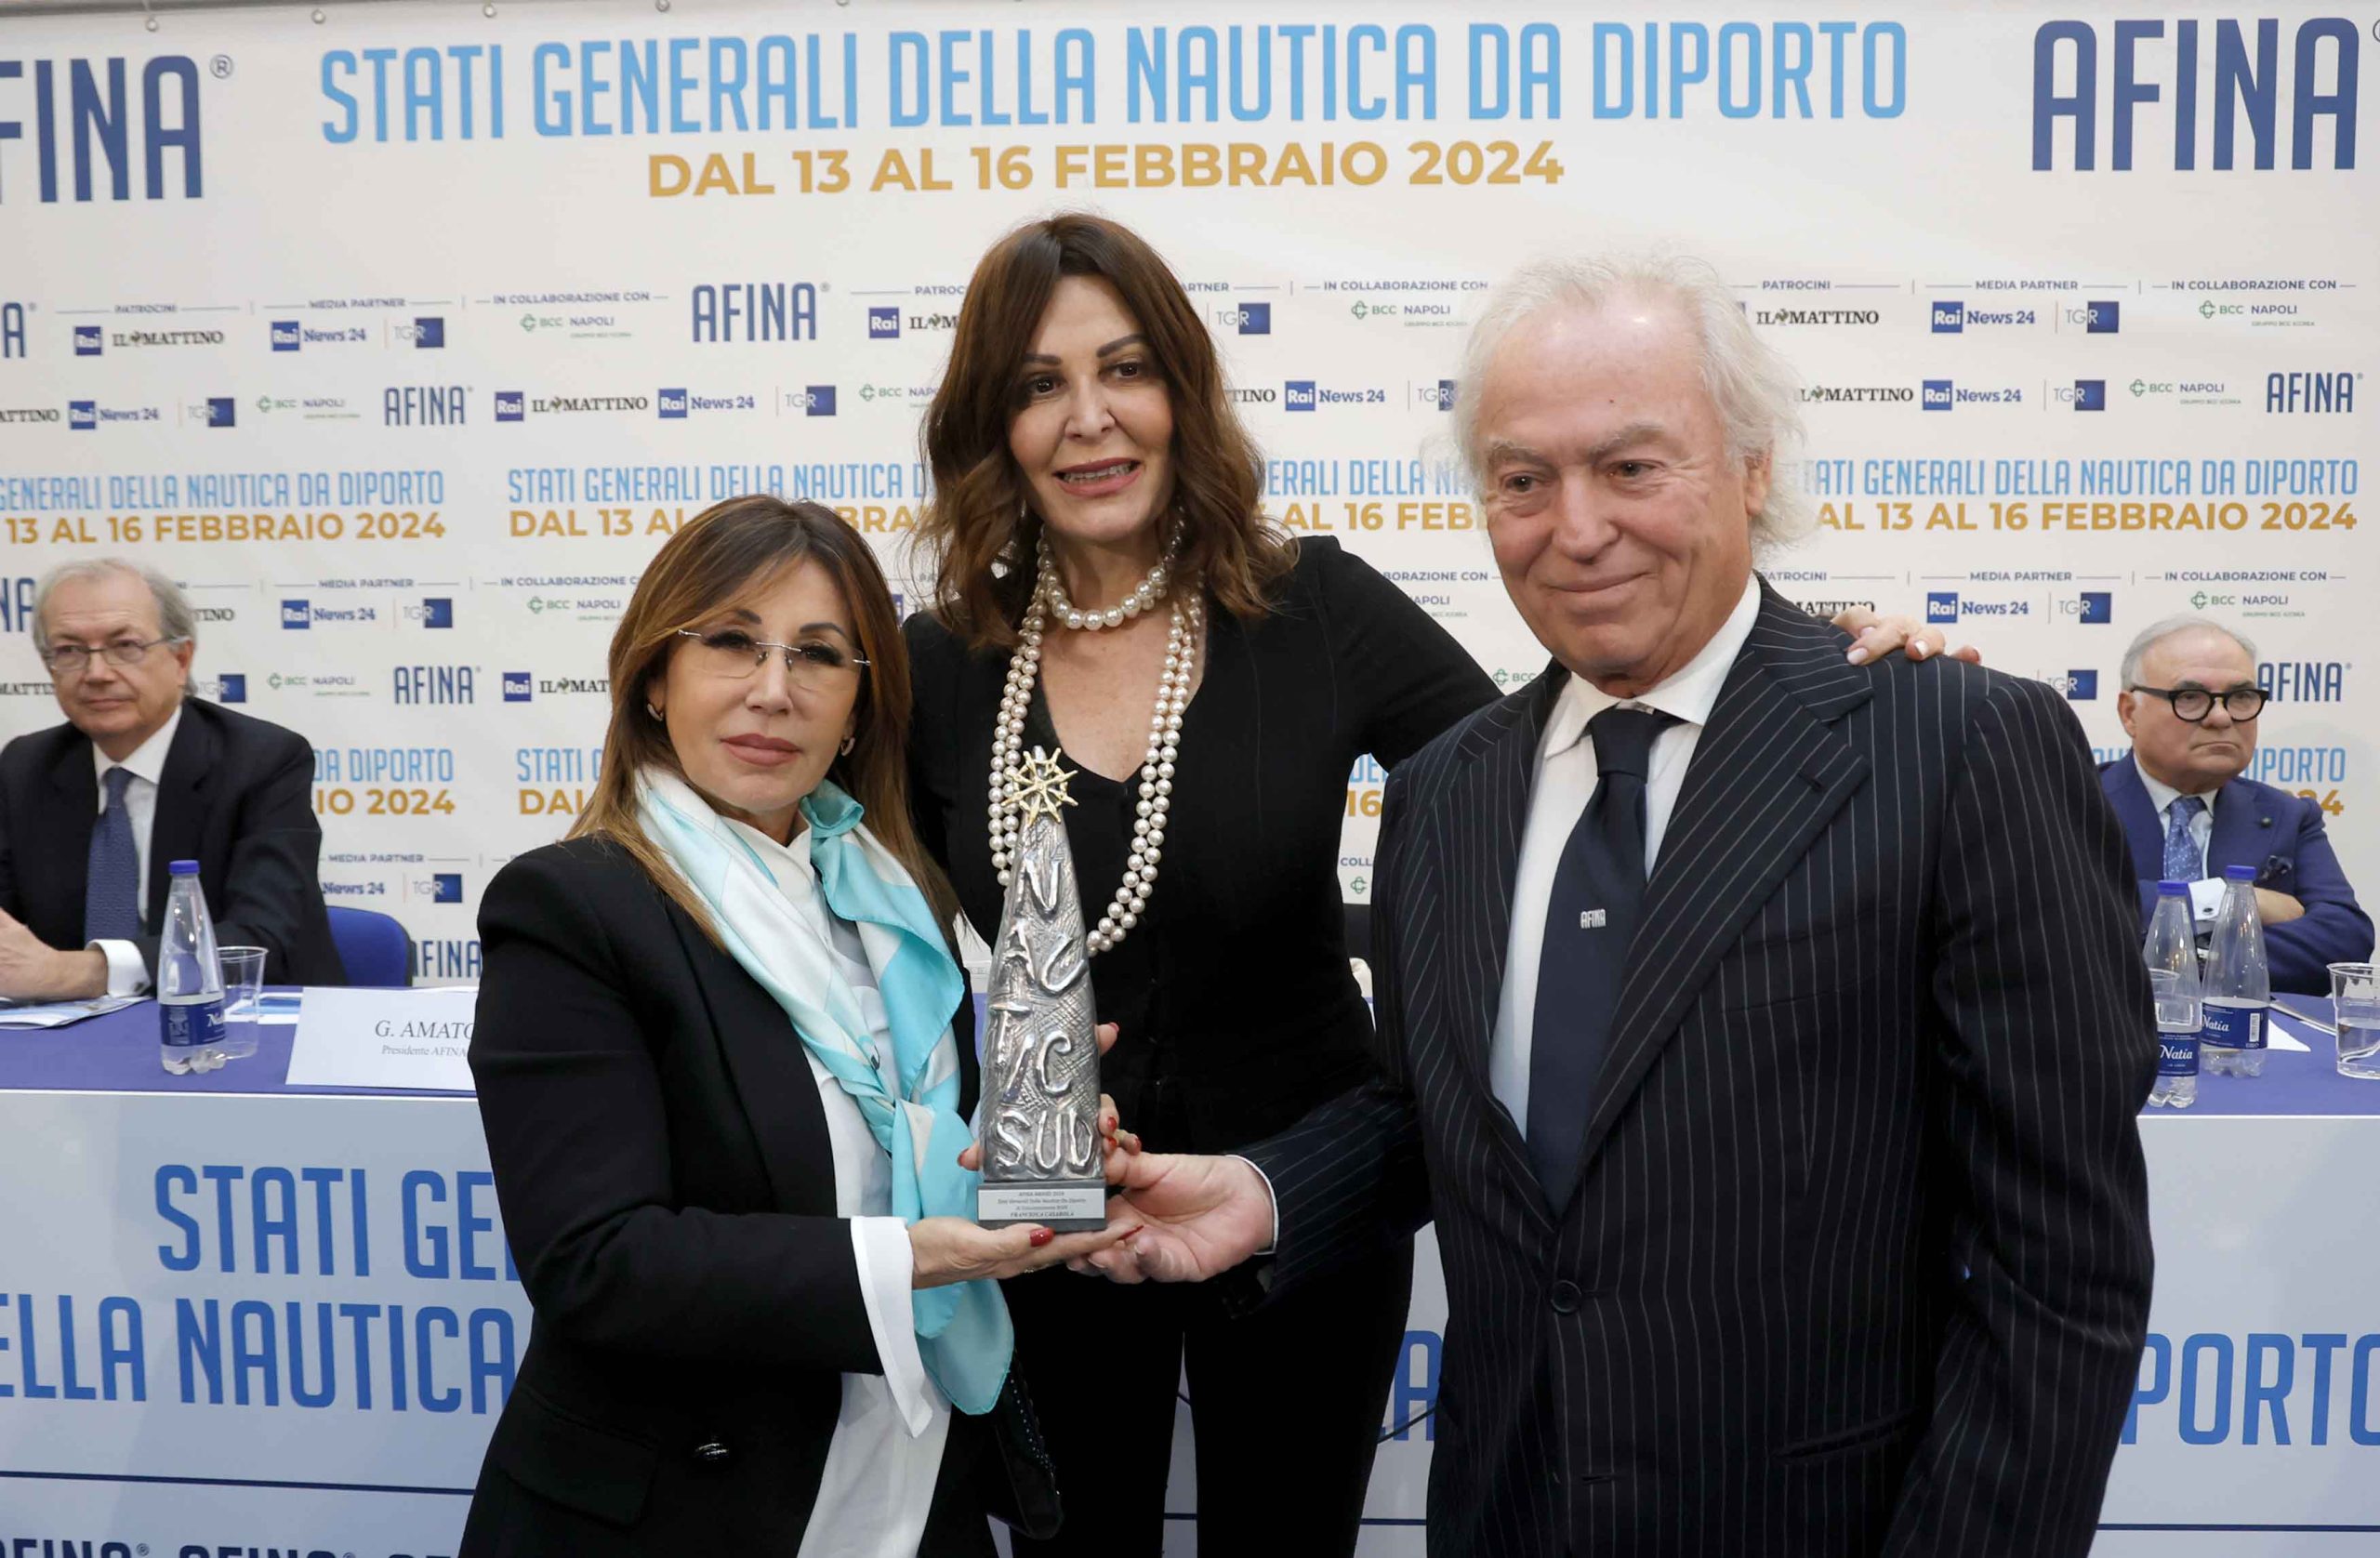 Il ministro Daniela Santanchè: “La nautica da diporto vero motore di  sviluppo economico del centro sud Italia” - Italiani News